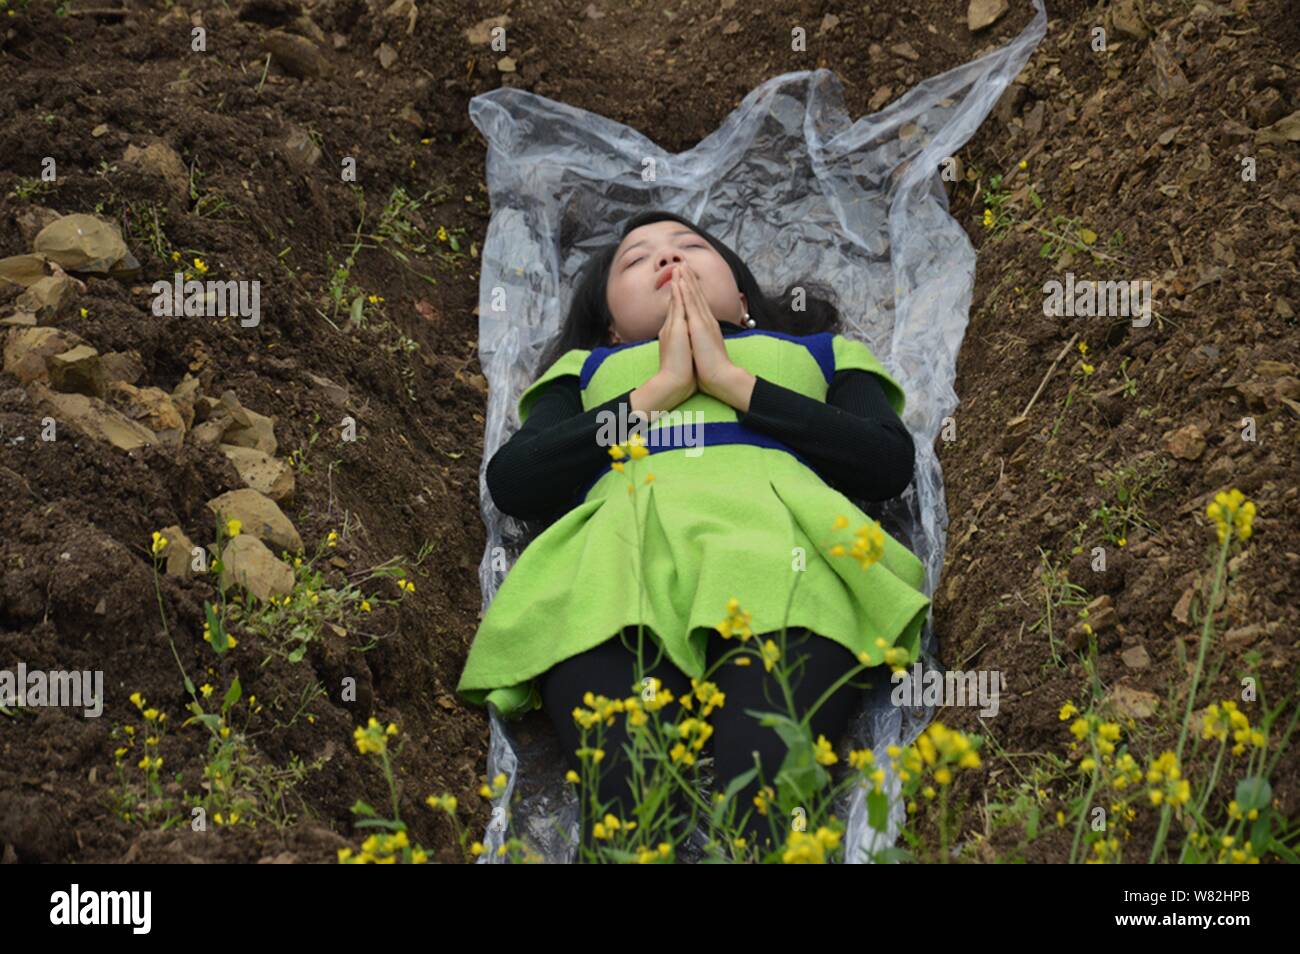 Une femme chinoise se trouve dans un tombeau 'terre' dans la loi de 'cimetière' méditation au cours d'un rituel peu commun pour aider à faire face à leur mariage divorcés ne parviennent pas Banque D'Images